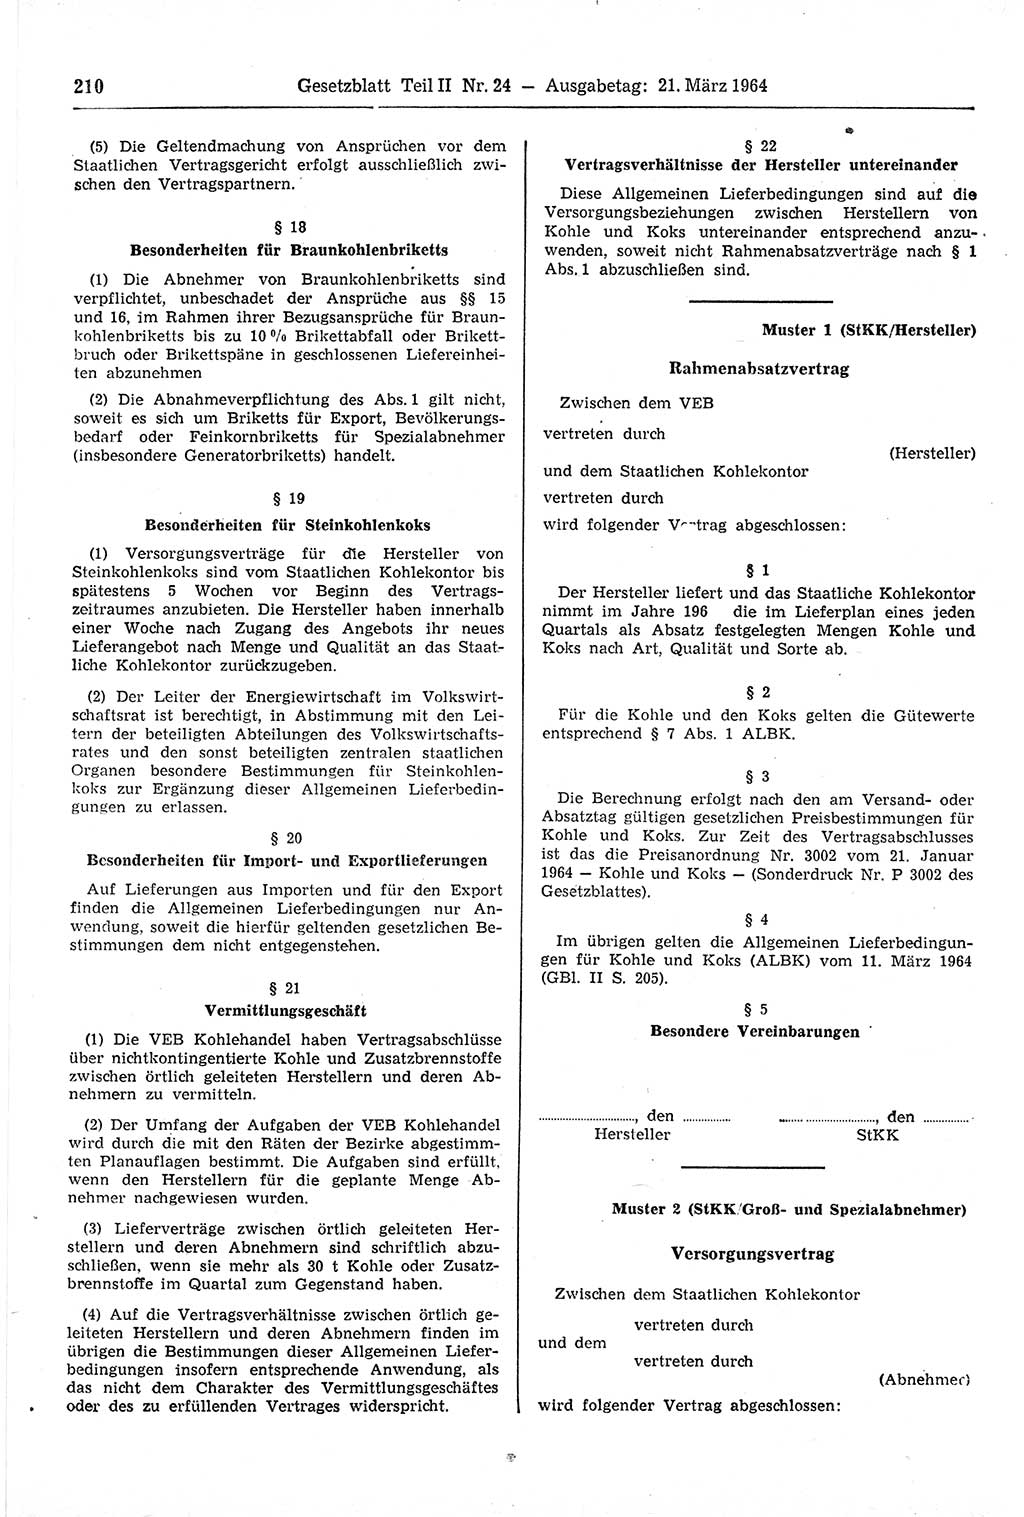 Gesetzblatt (GBl.) der Deutschen Demokratischen Republik (DDR) Teil ⅠⅠ 1964, Seite 210 (GBl. DDR ⅠⅠ 1964, S. 210)